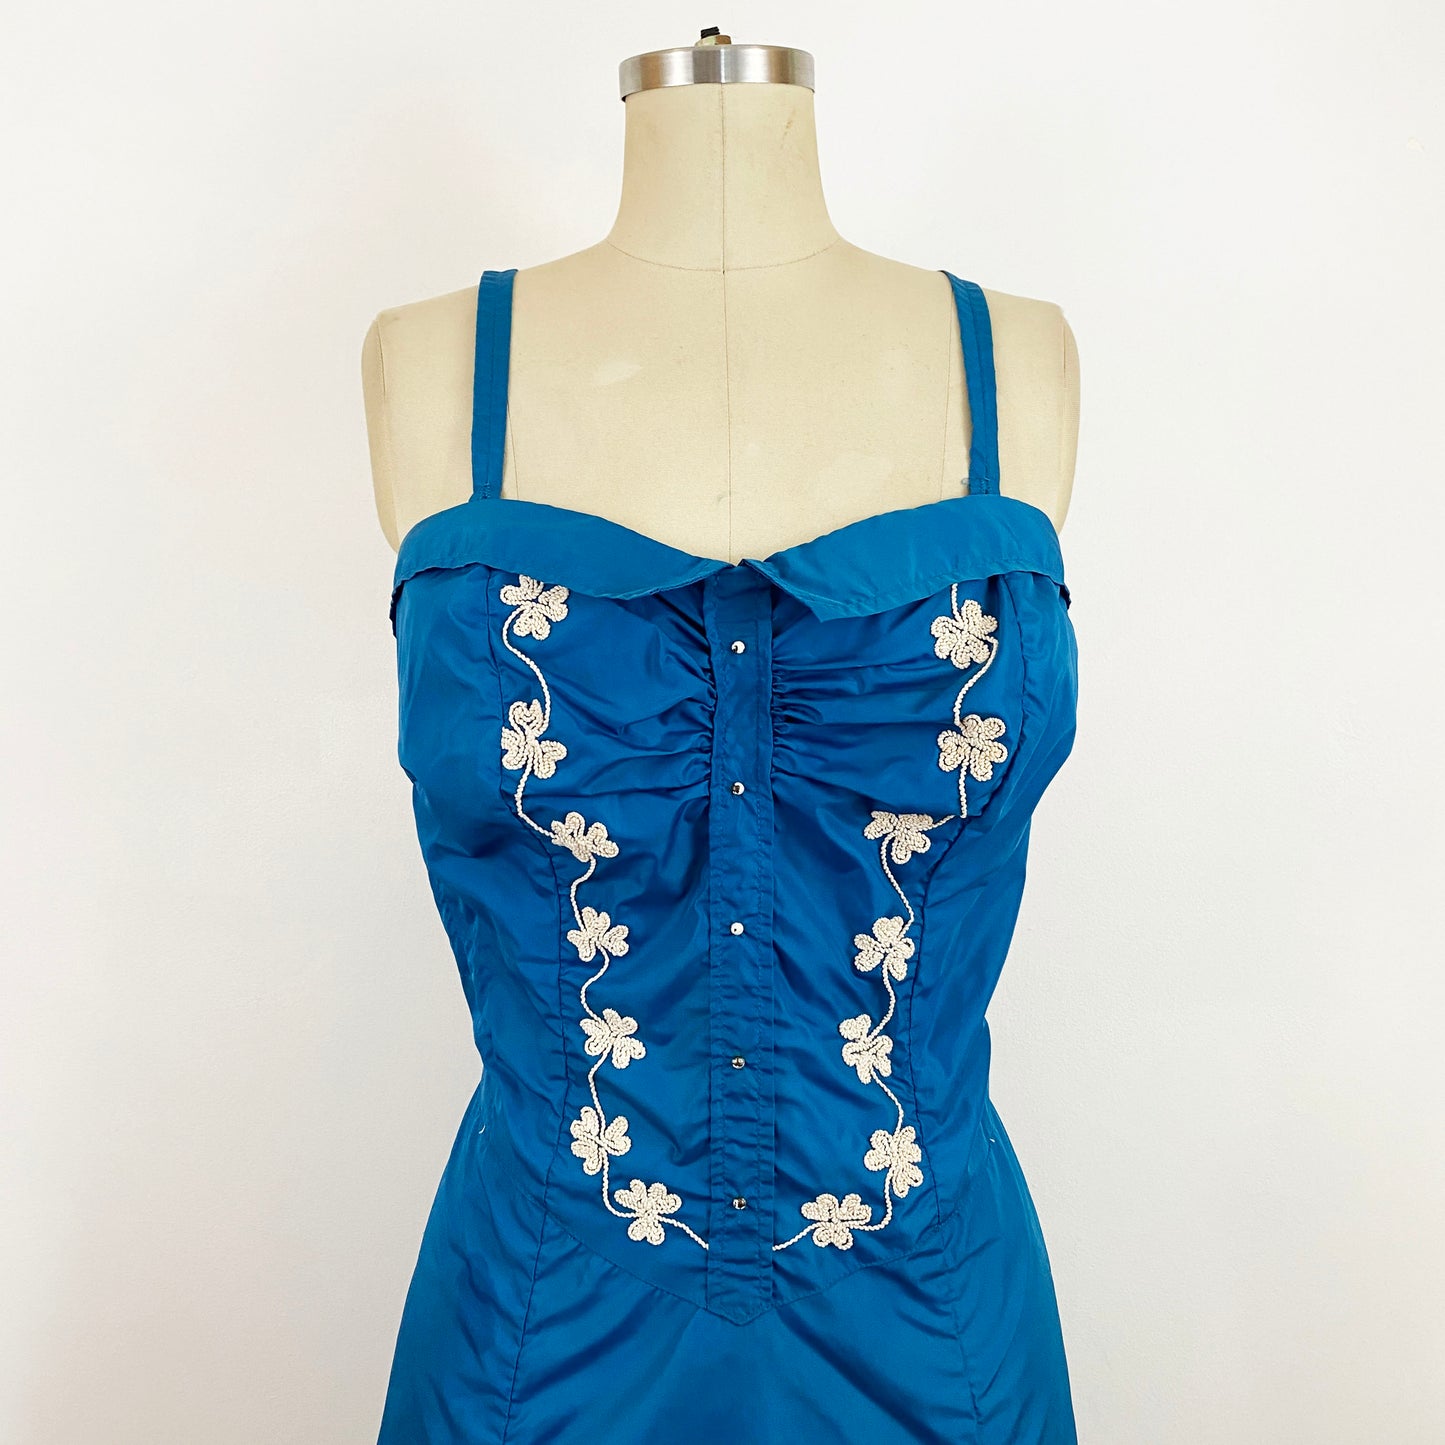 1950s Catalina Blue Nylon Smocked Skirted Swimsuit Retro Swim Dress Rockabilly Bathing Suit Bombshell Plus Size / Extra Large 14/16